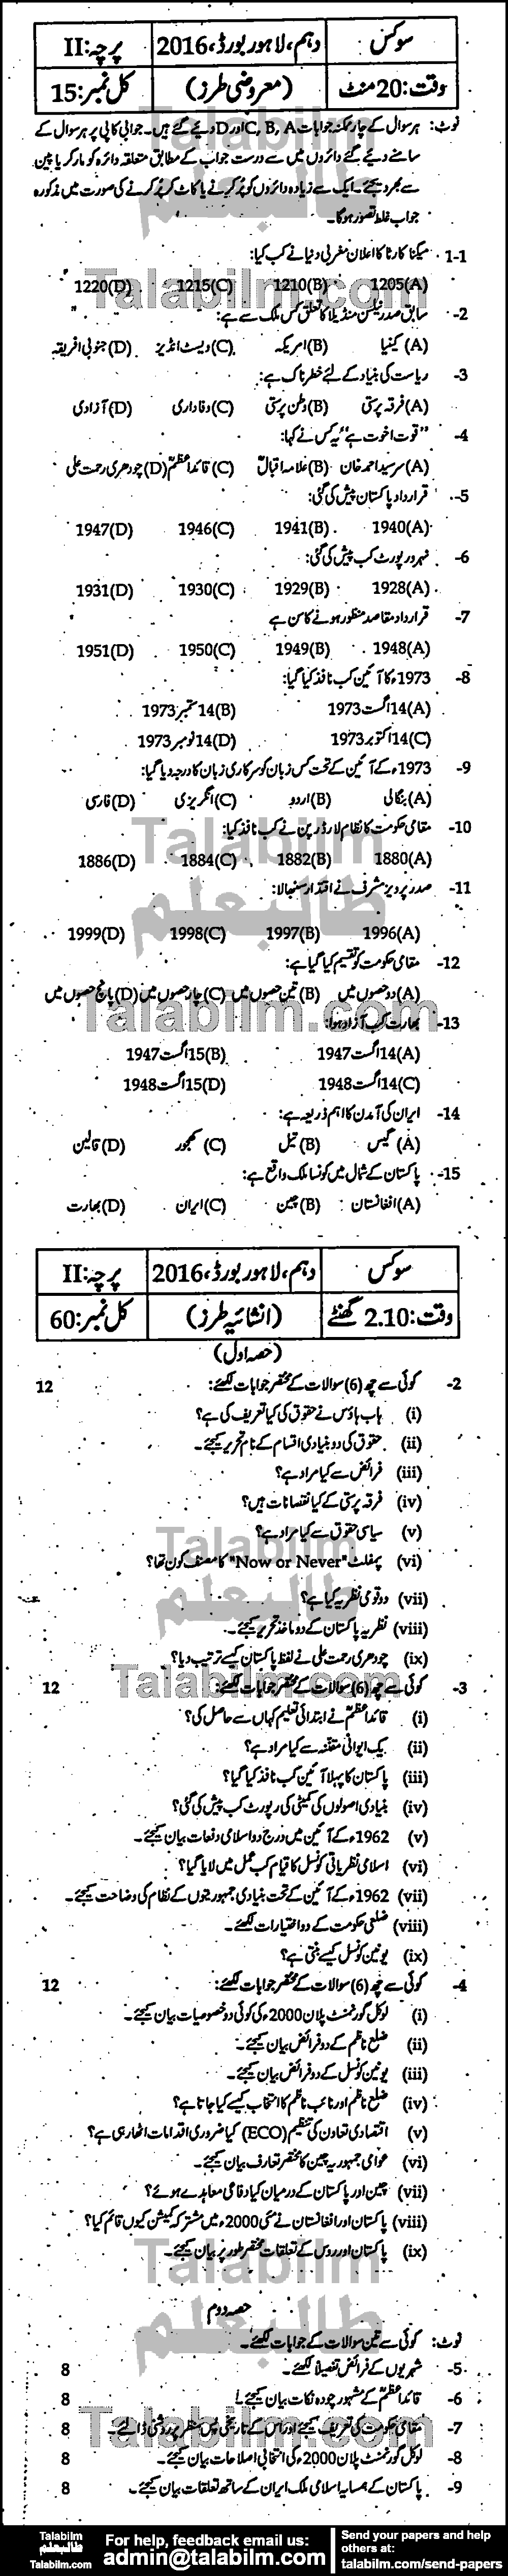 Civics 0 past paper for Urdu Medium 2016 Group-I